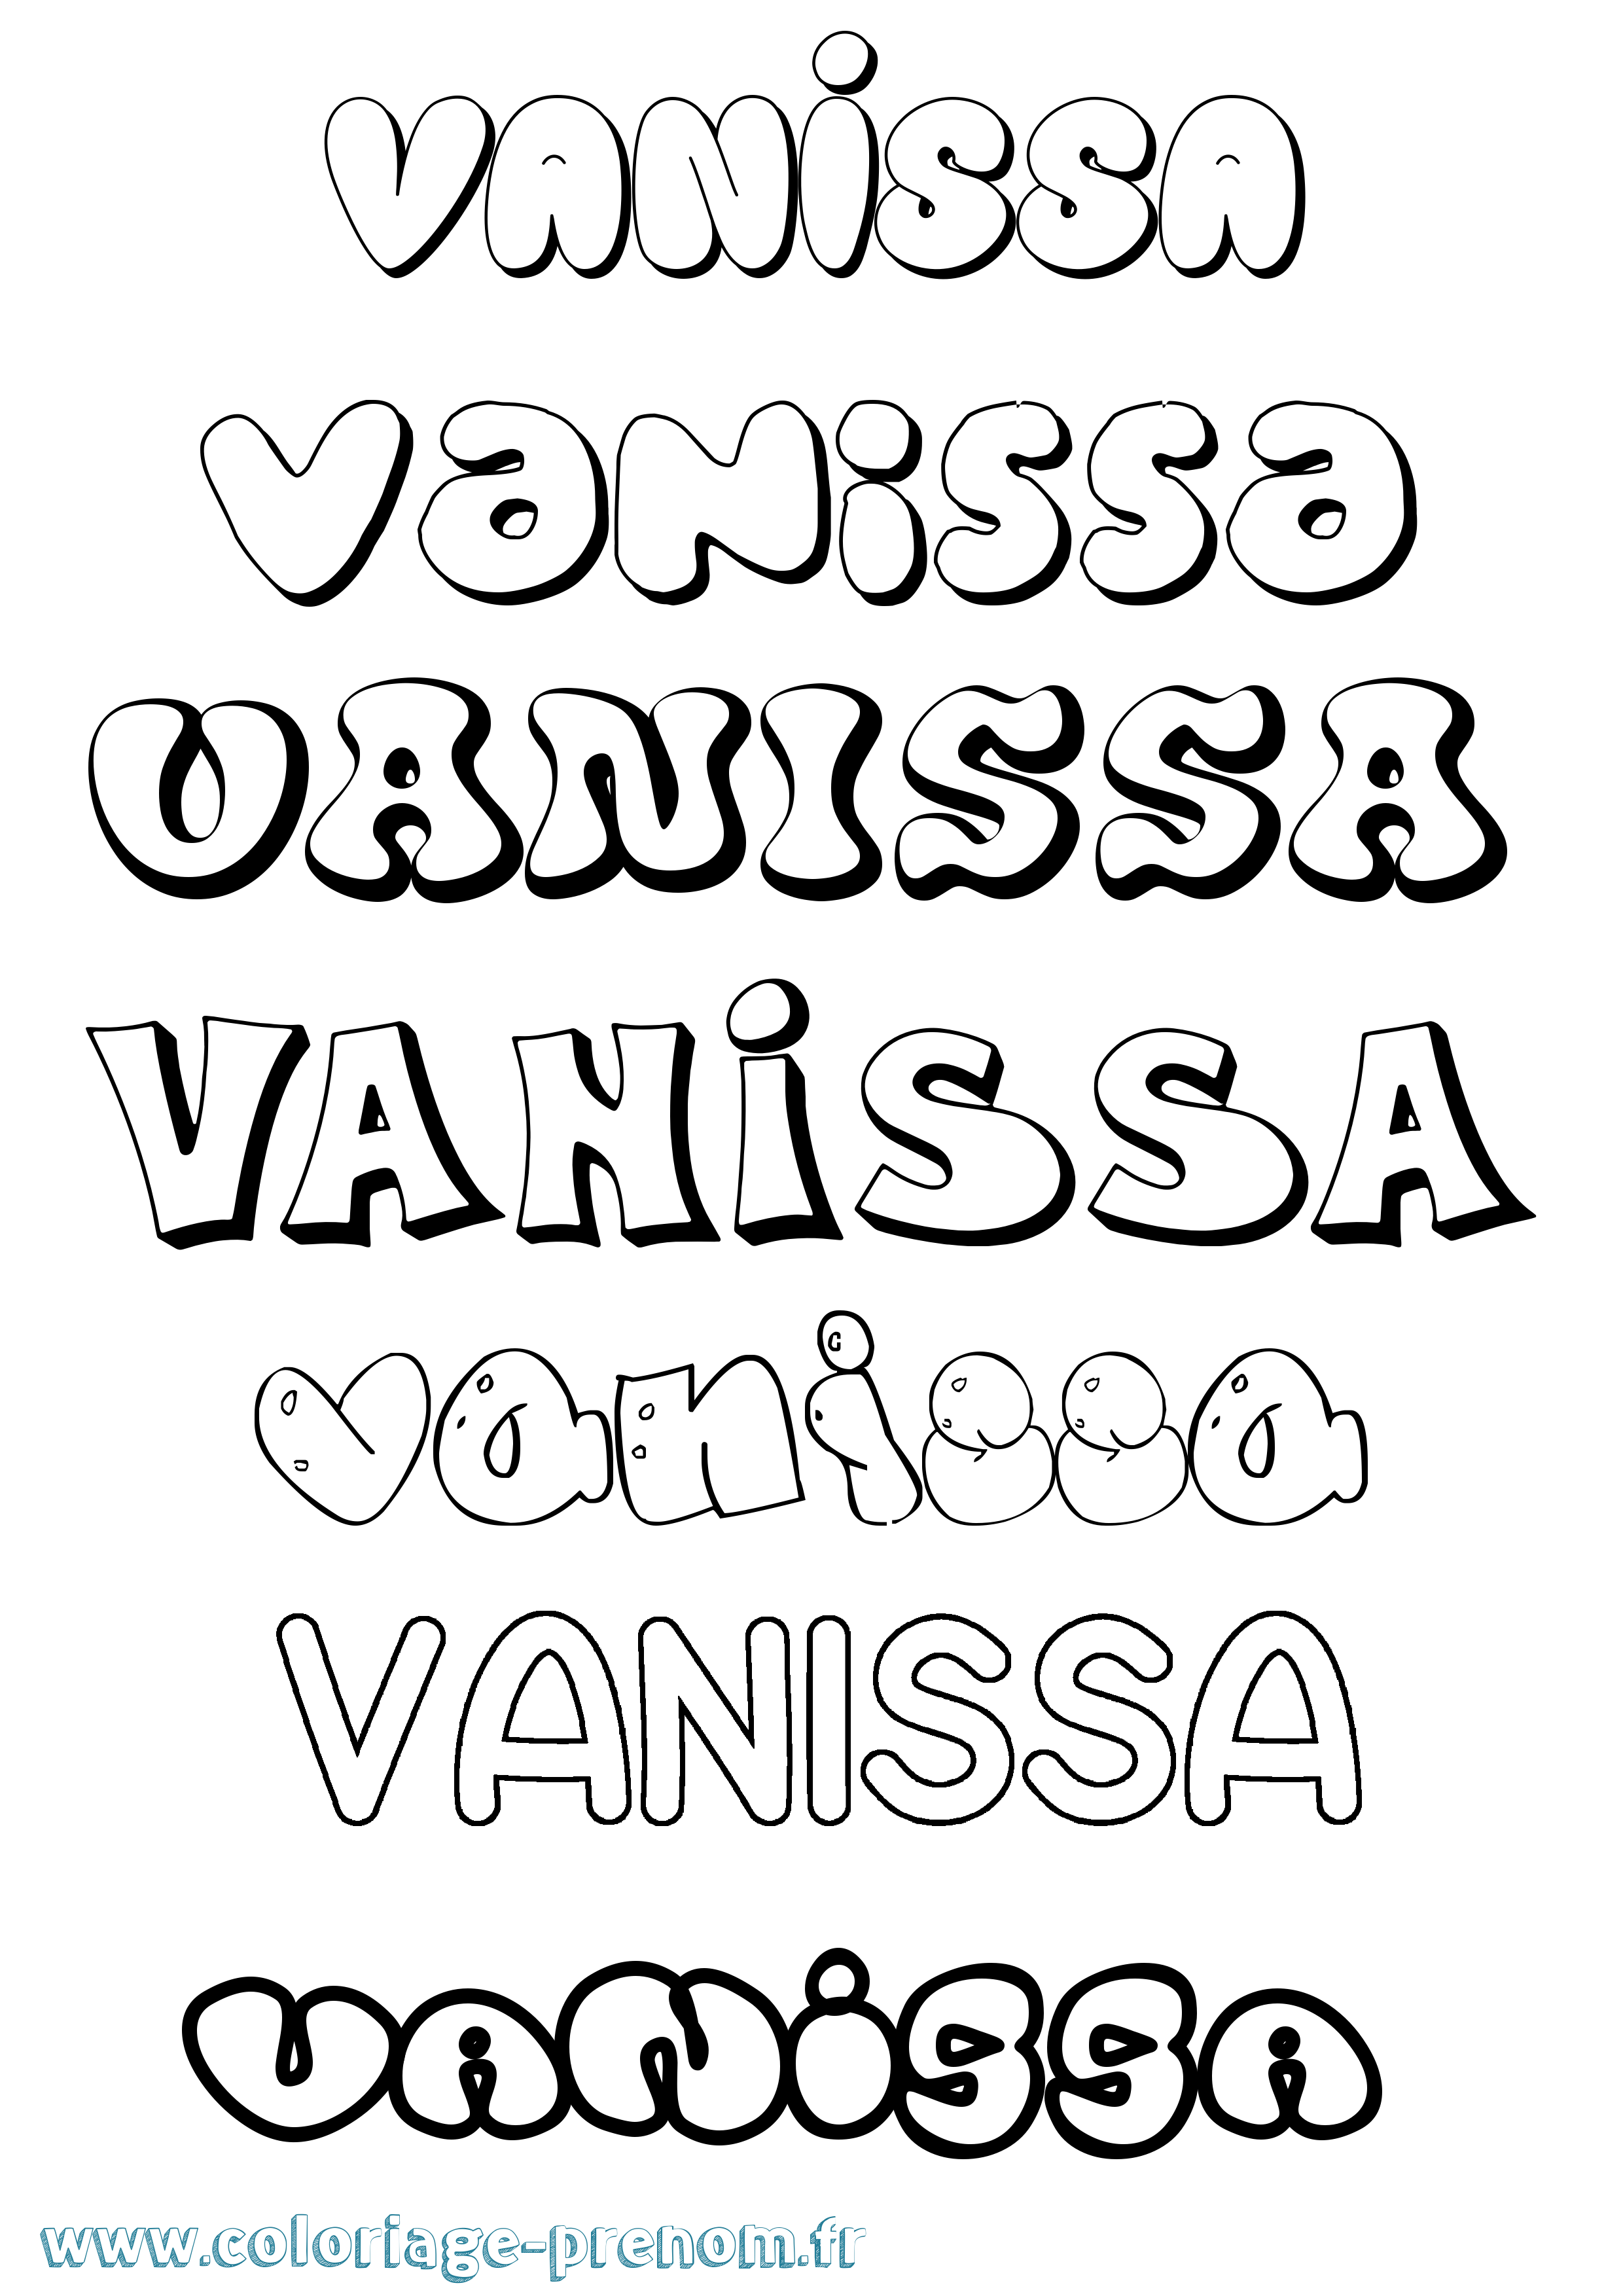 Coloriage prénom Vanissa Bubble